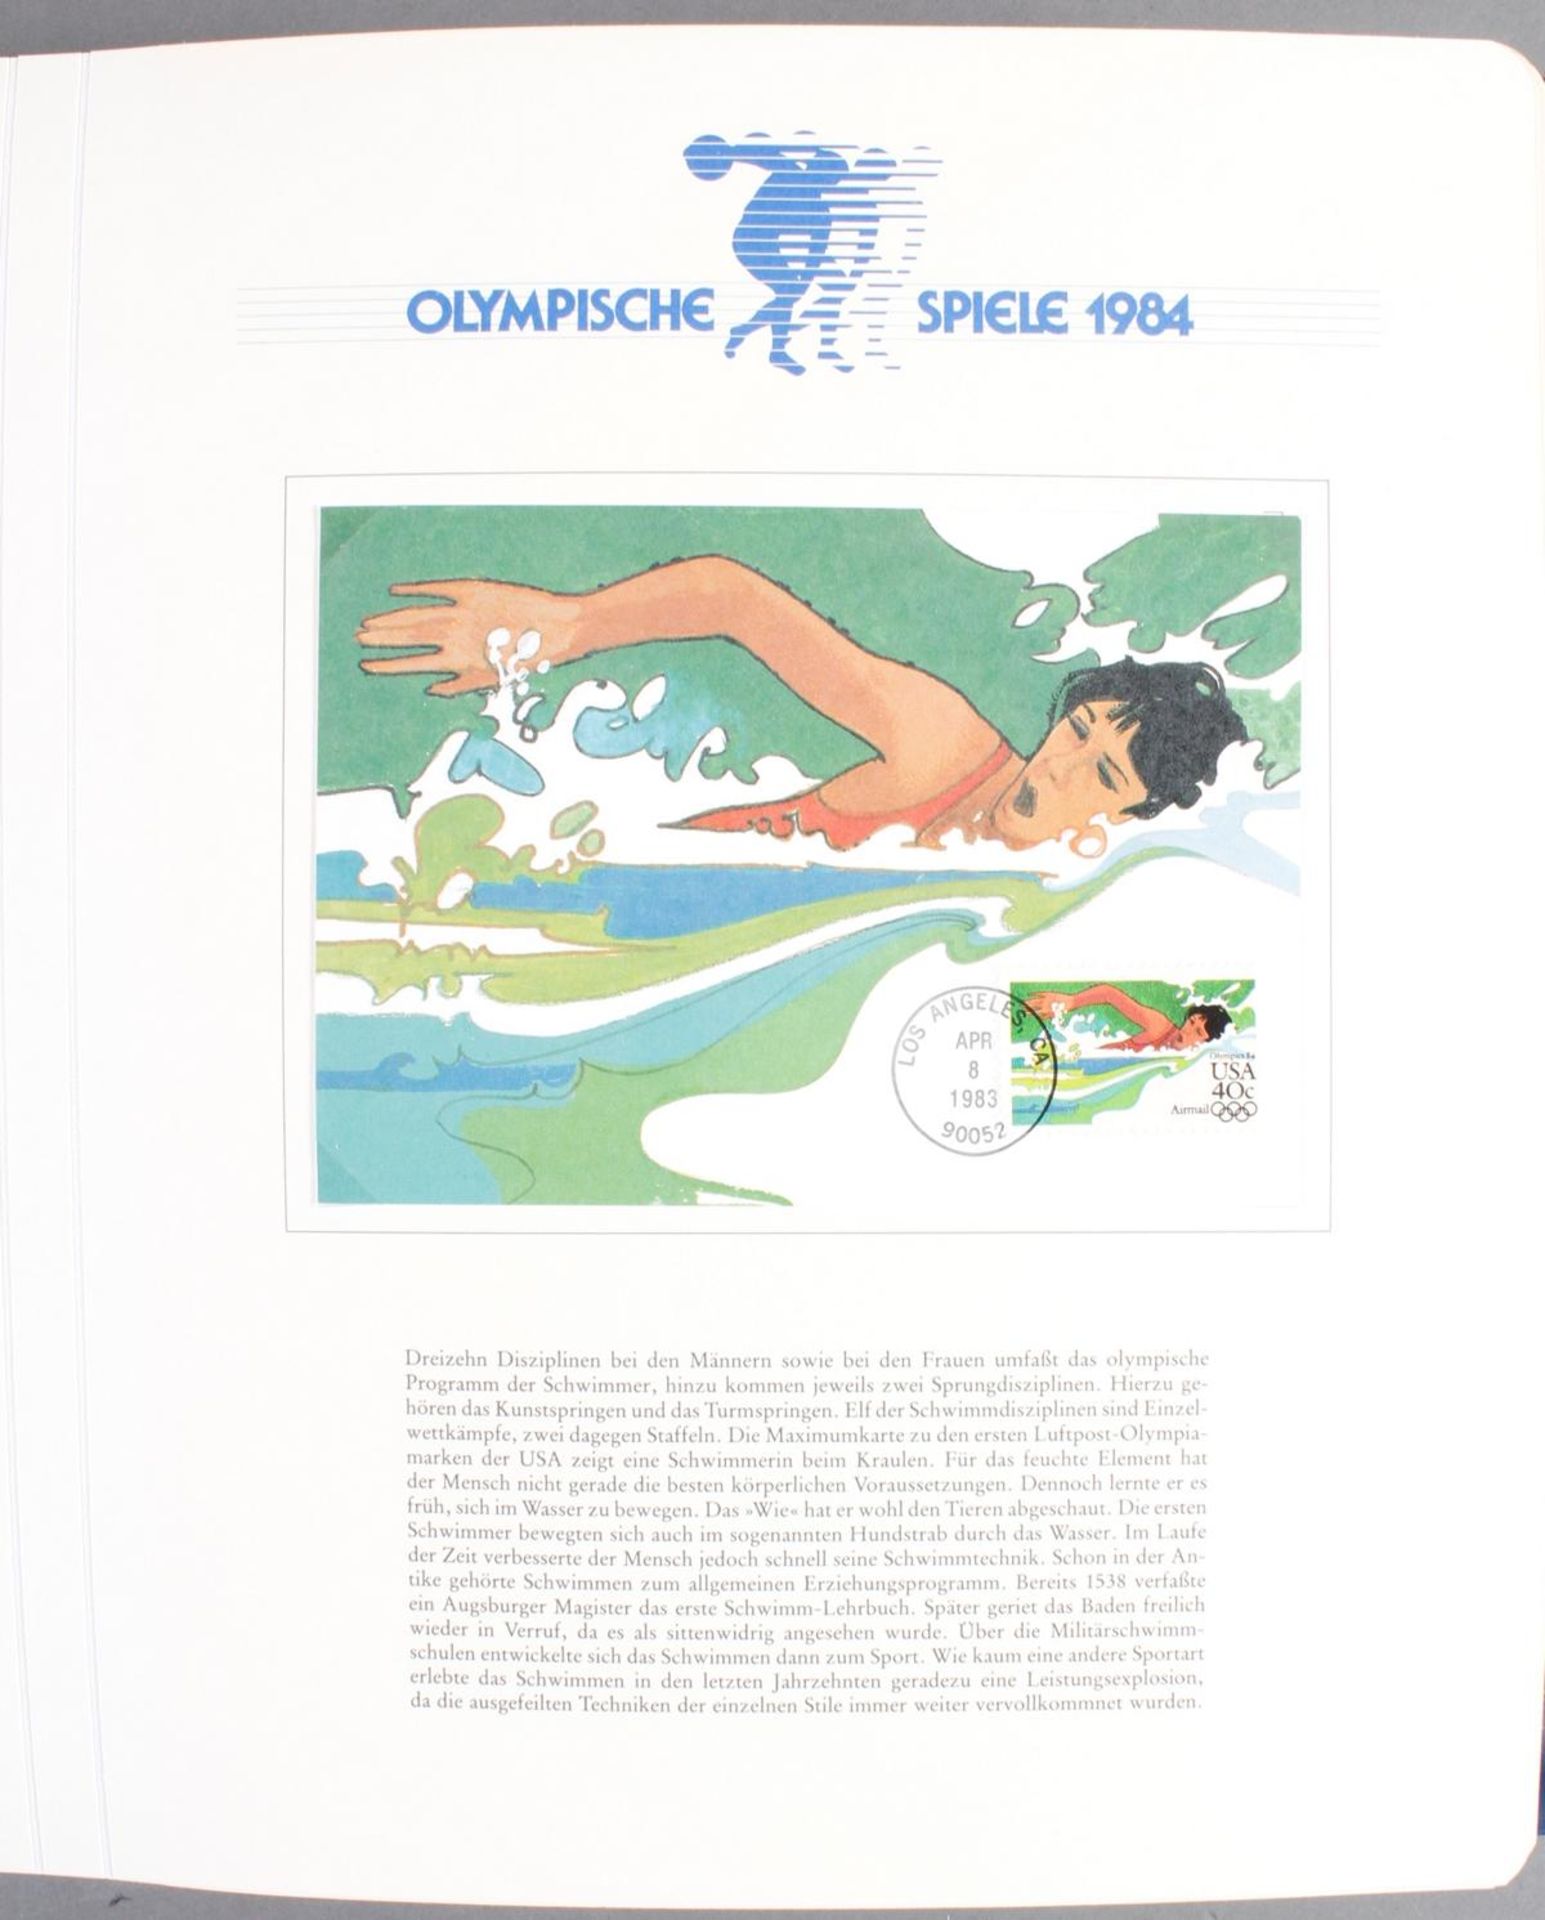 Abosammlung: Olympische Spiele 1984 Los Angeles - Image 4 of 9